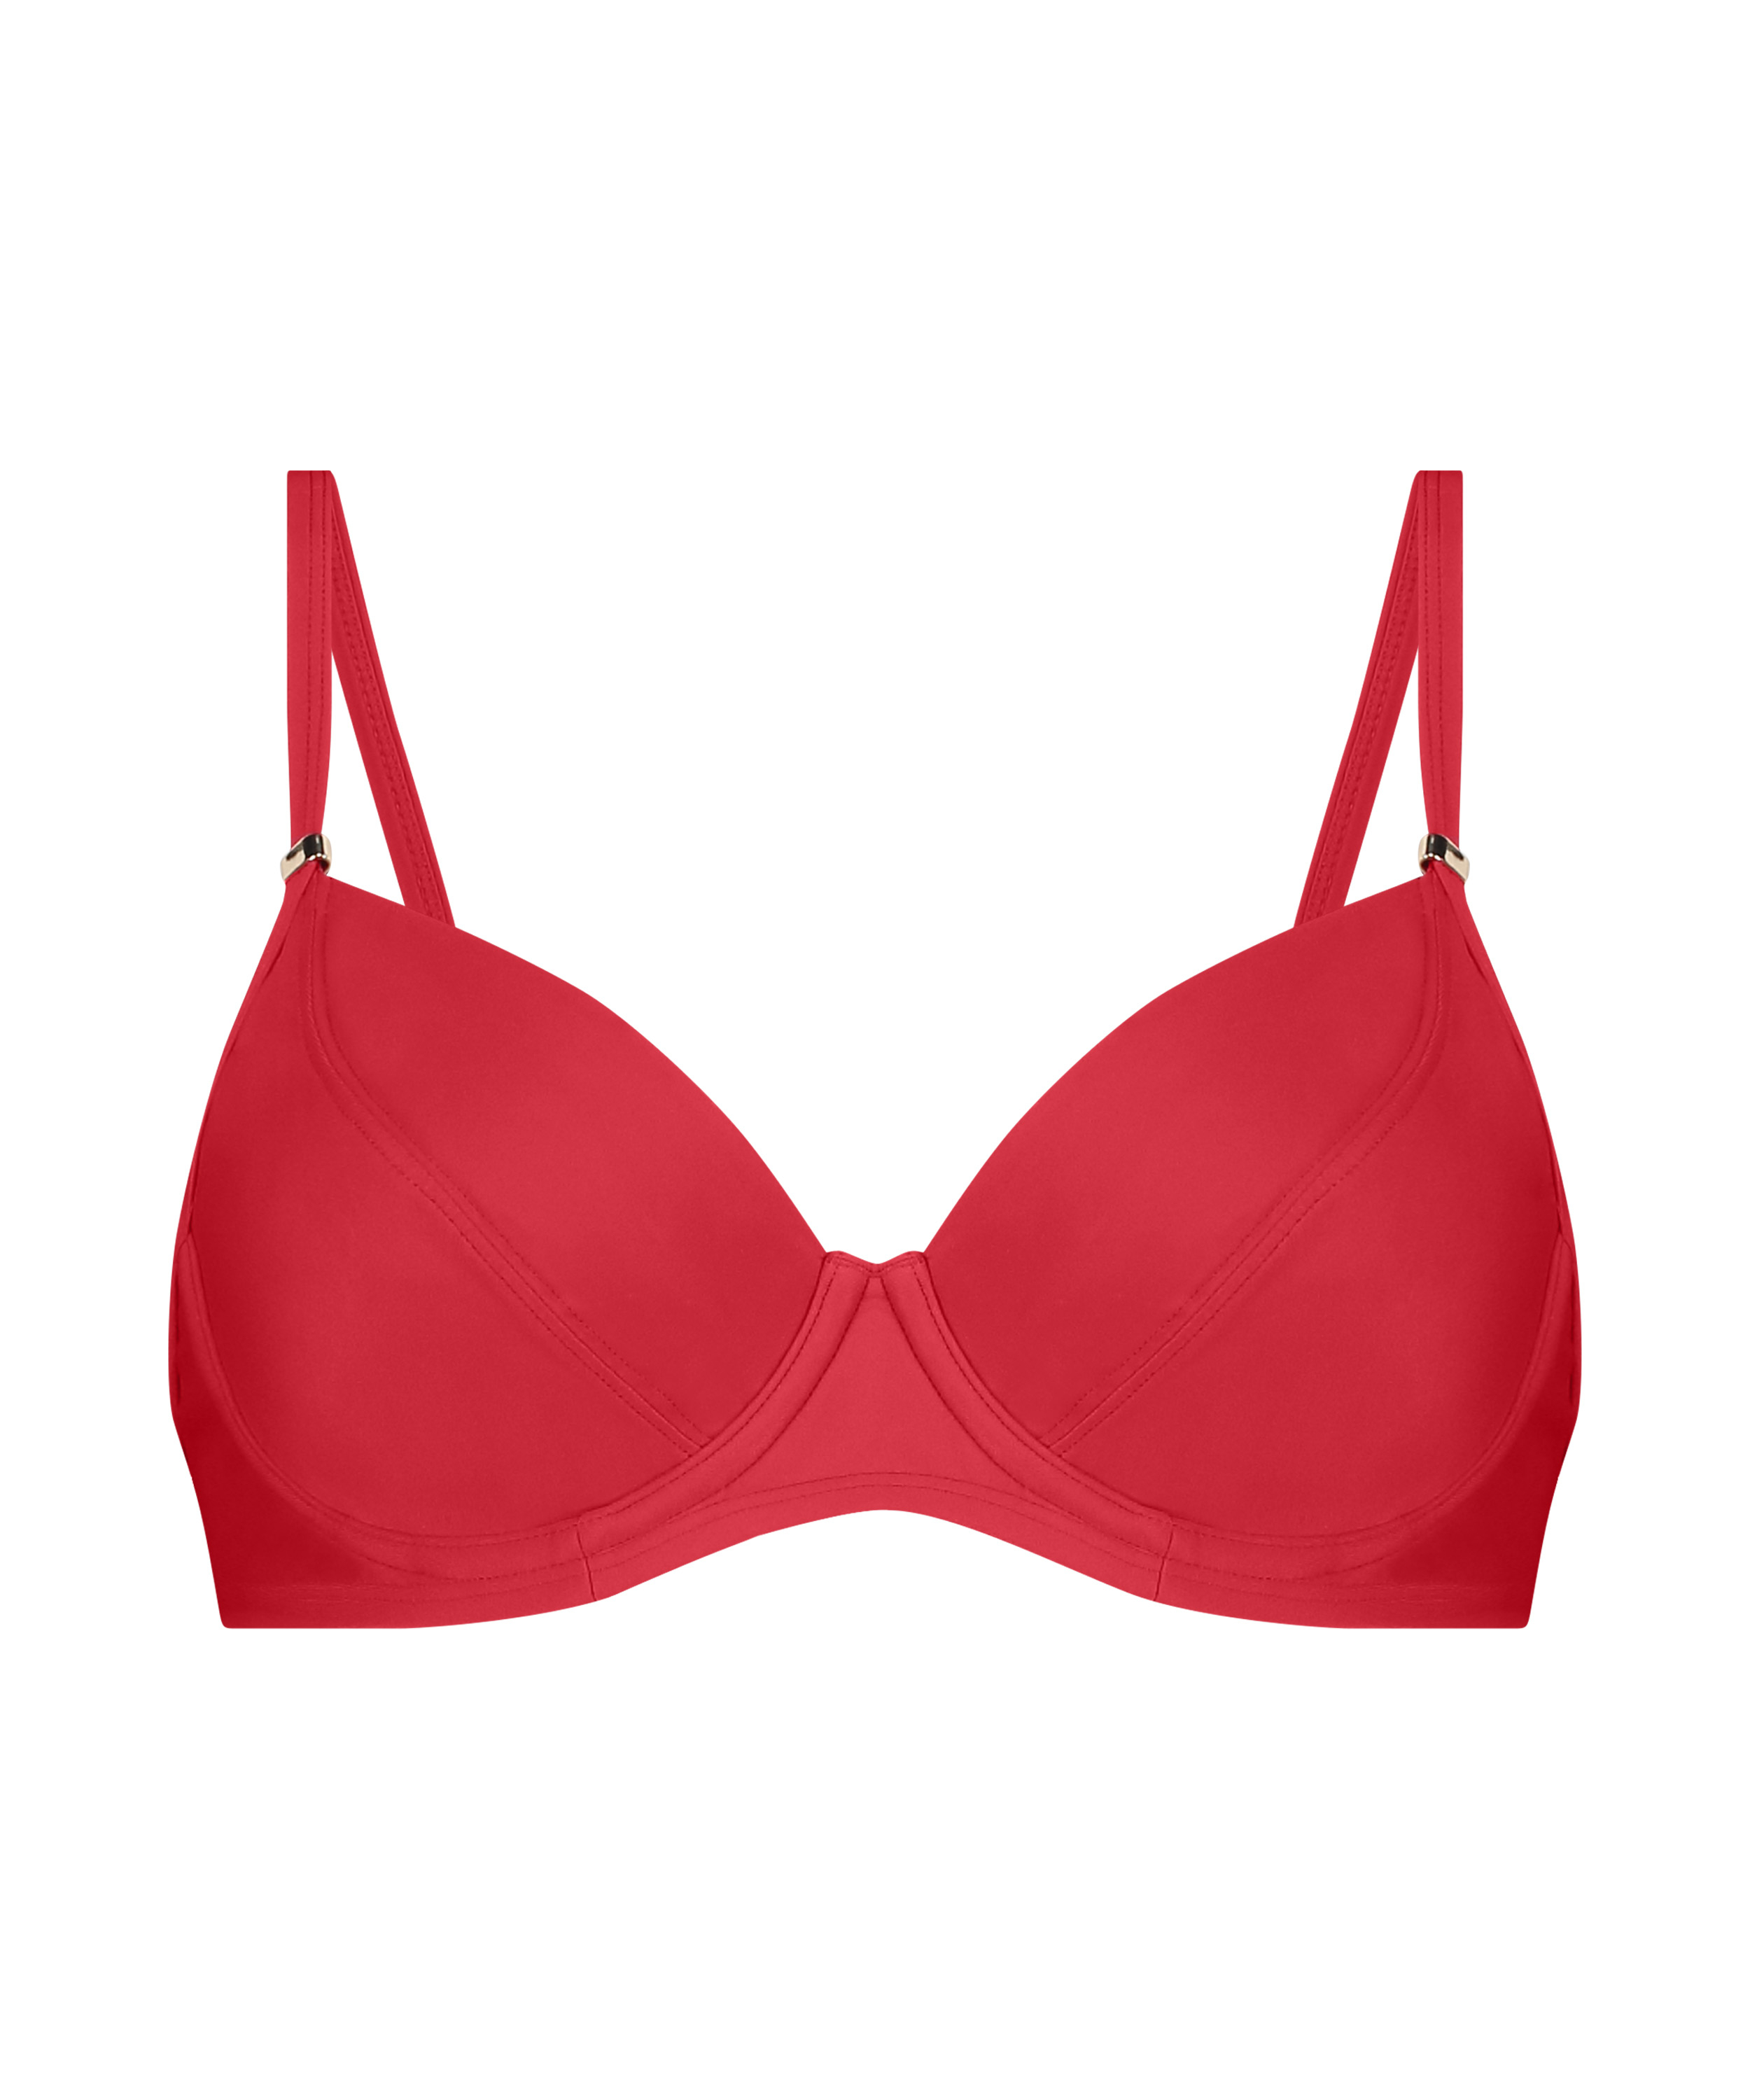 Luxe Bikini Top, Red, main